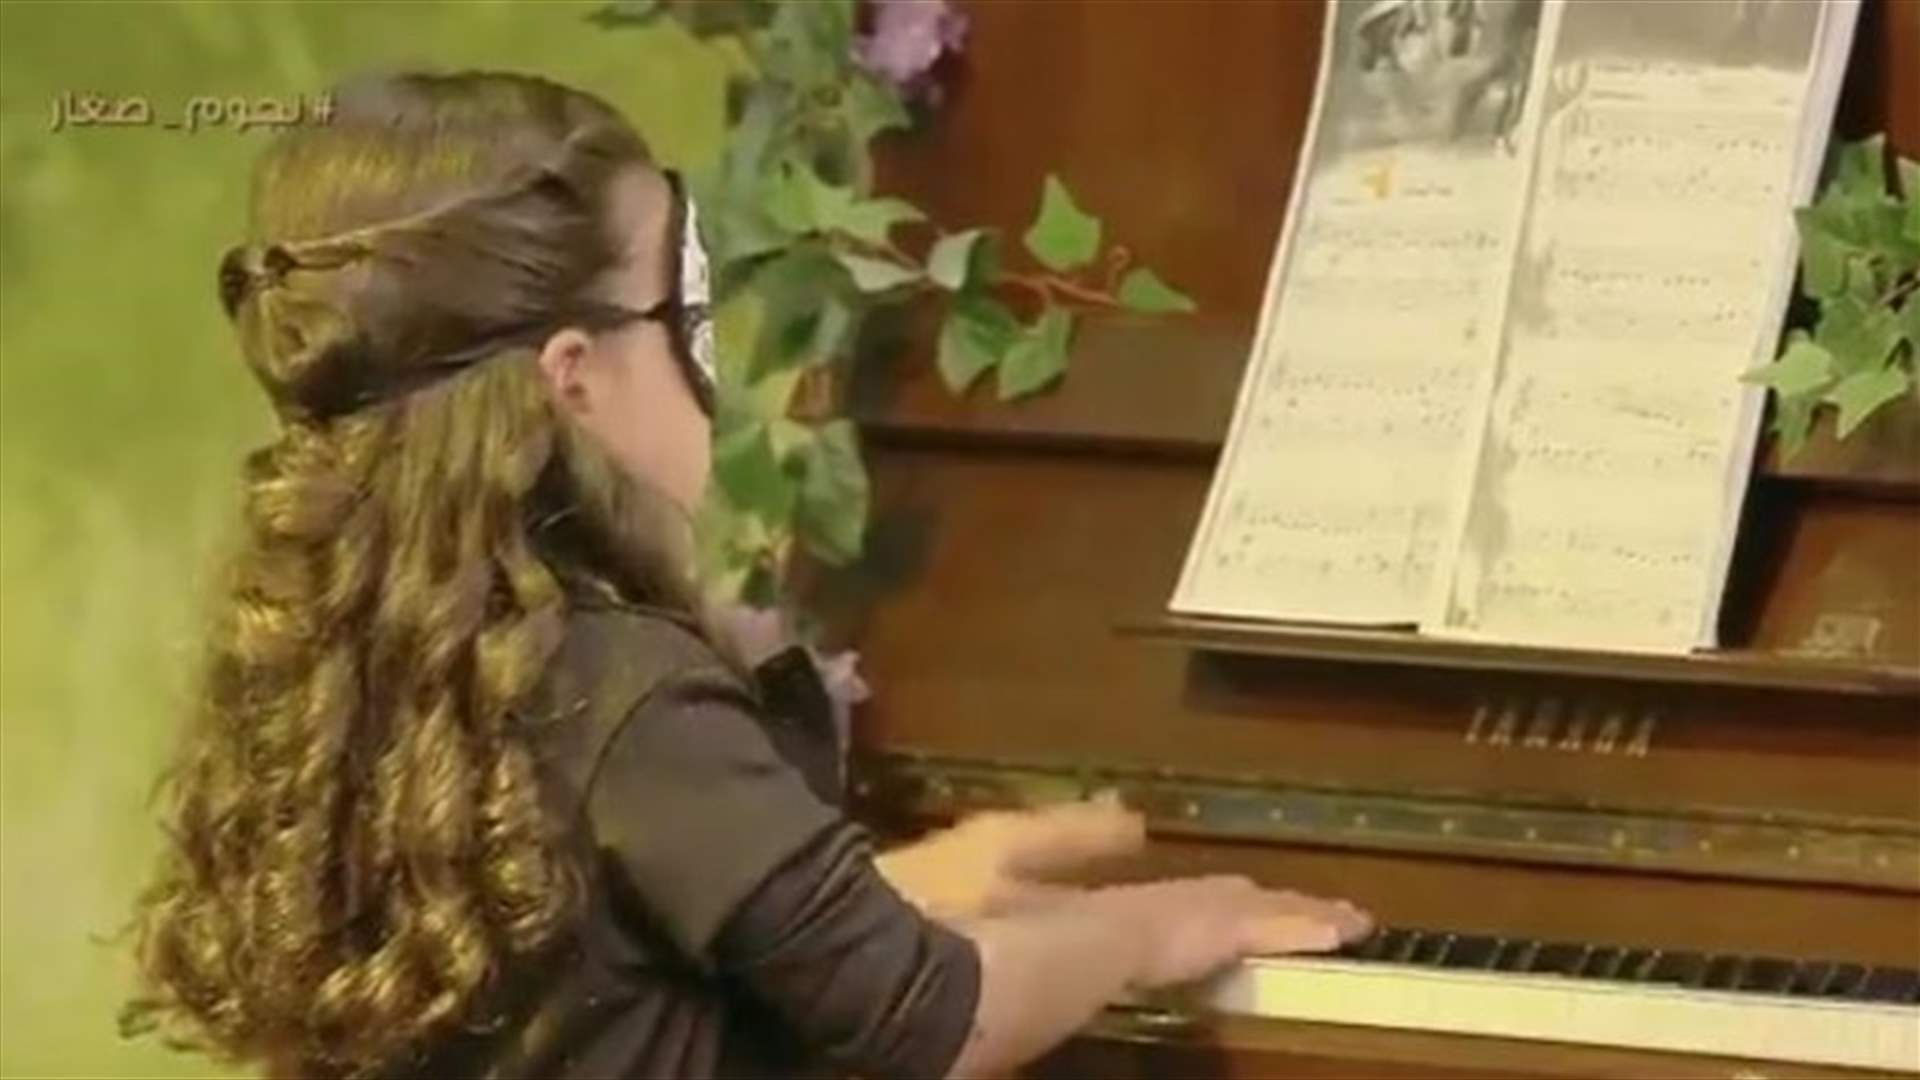 طفلة متعددة المواهب... عزفت البيانو وهي معصوبة العينين (فيديو)